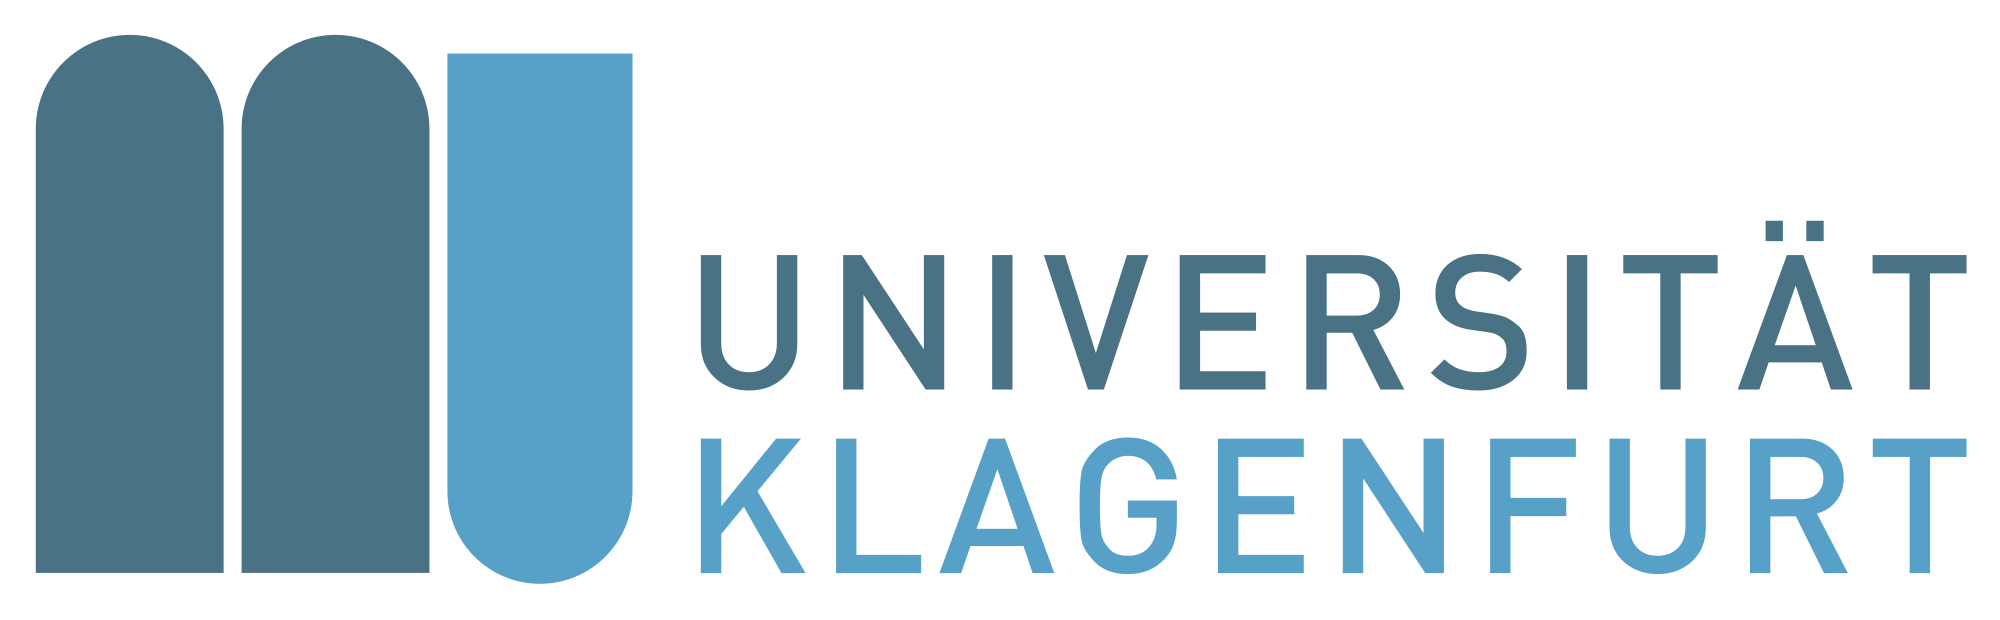 2000px-Universitaet_klagenfurt_logo.svg